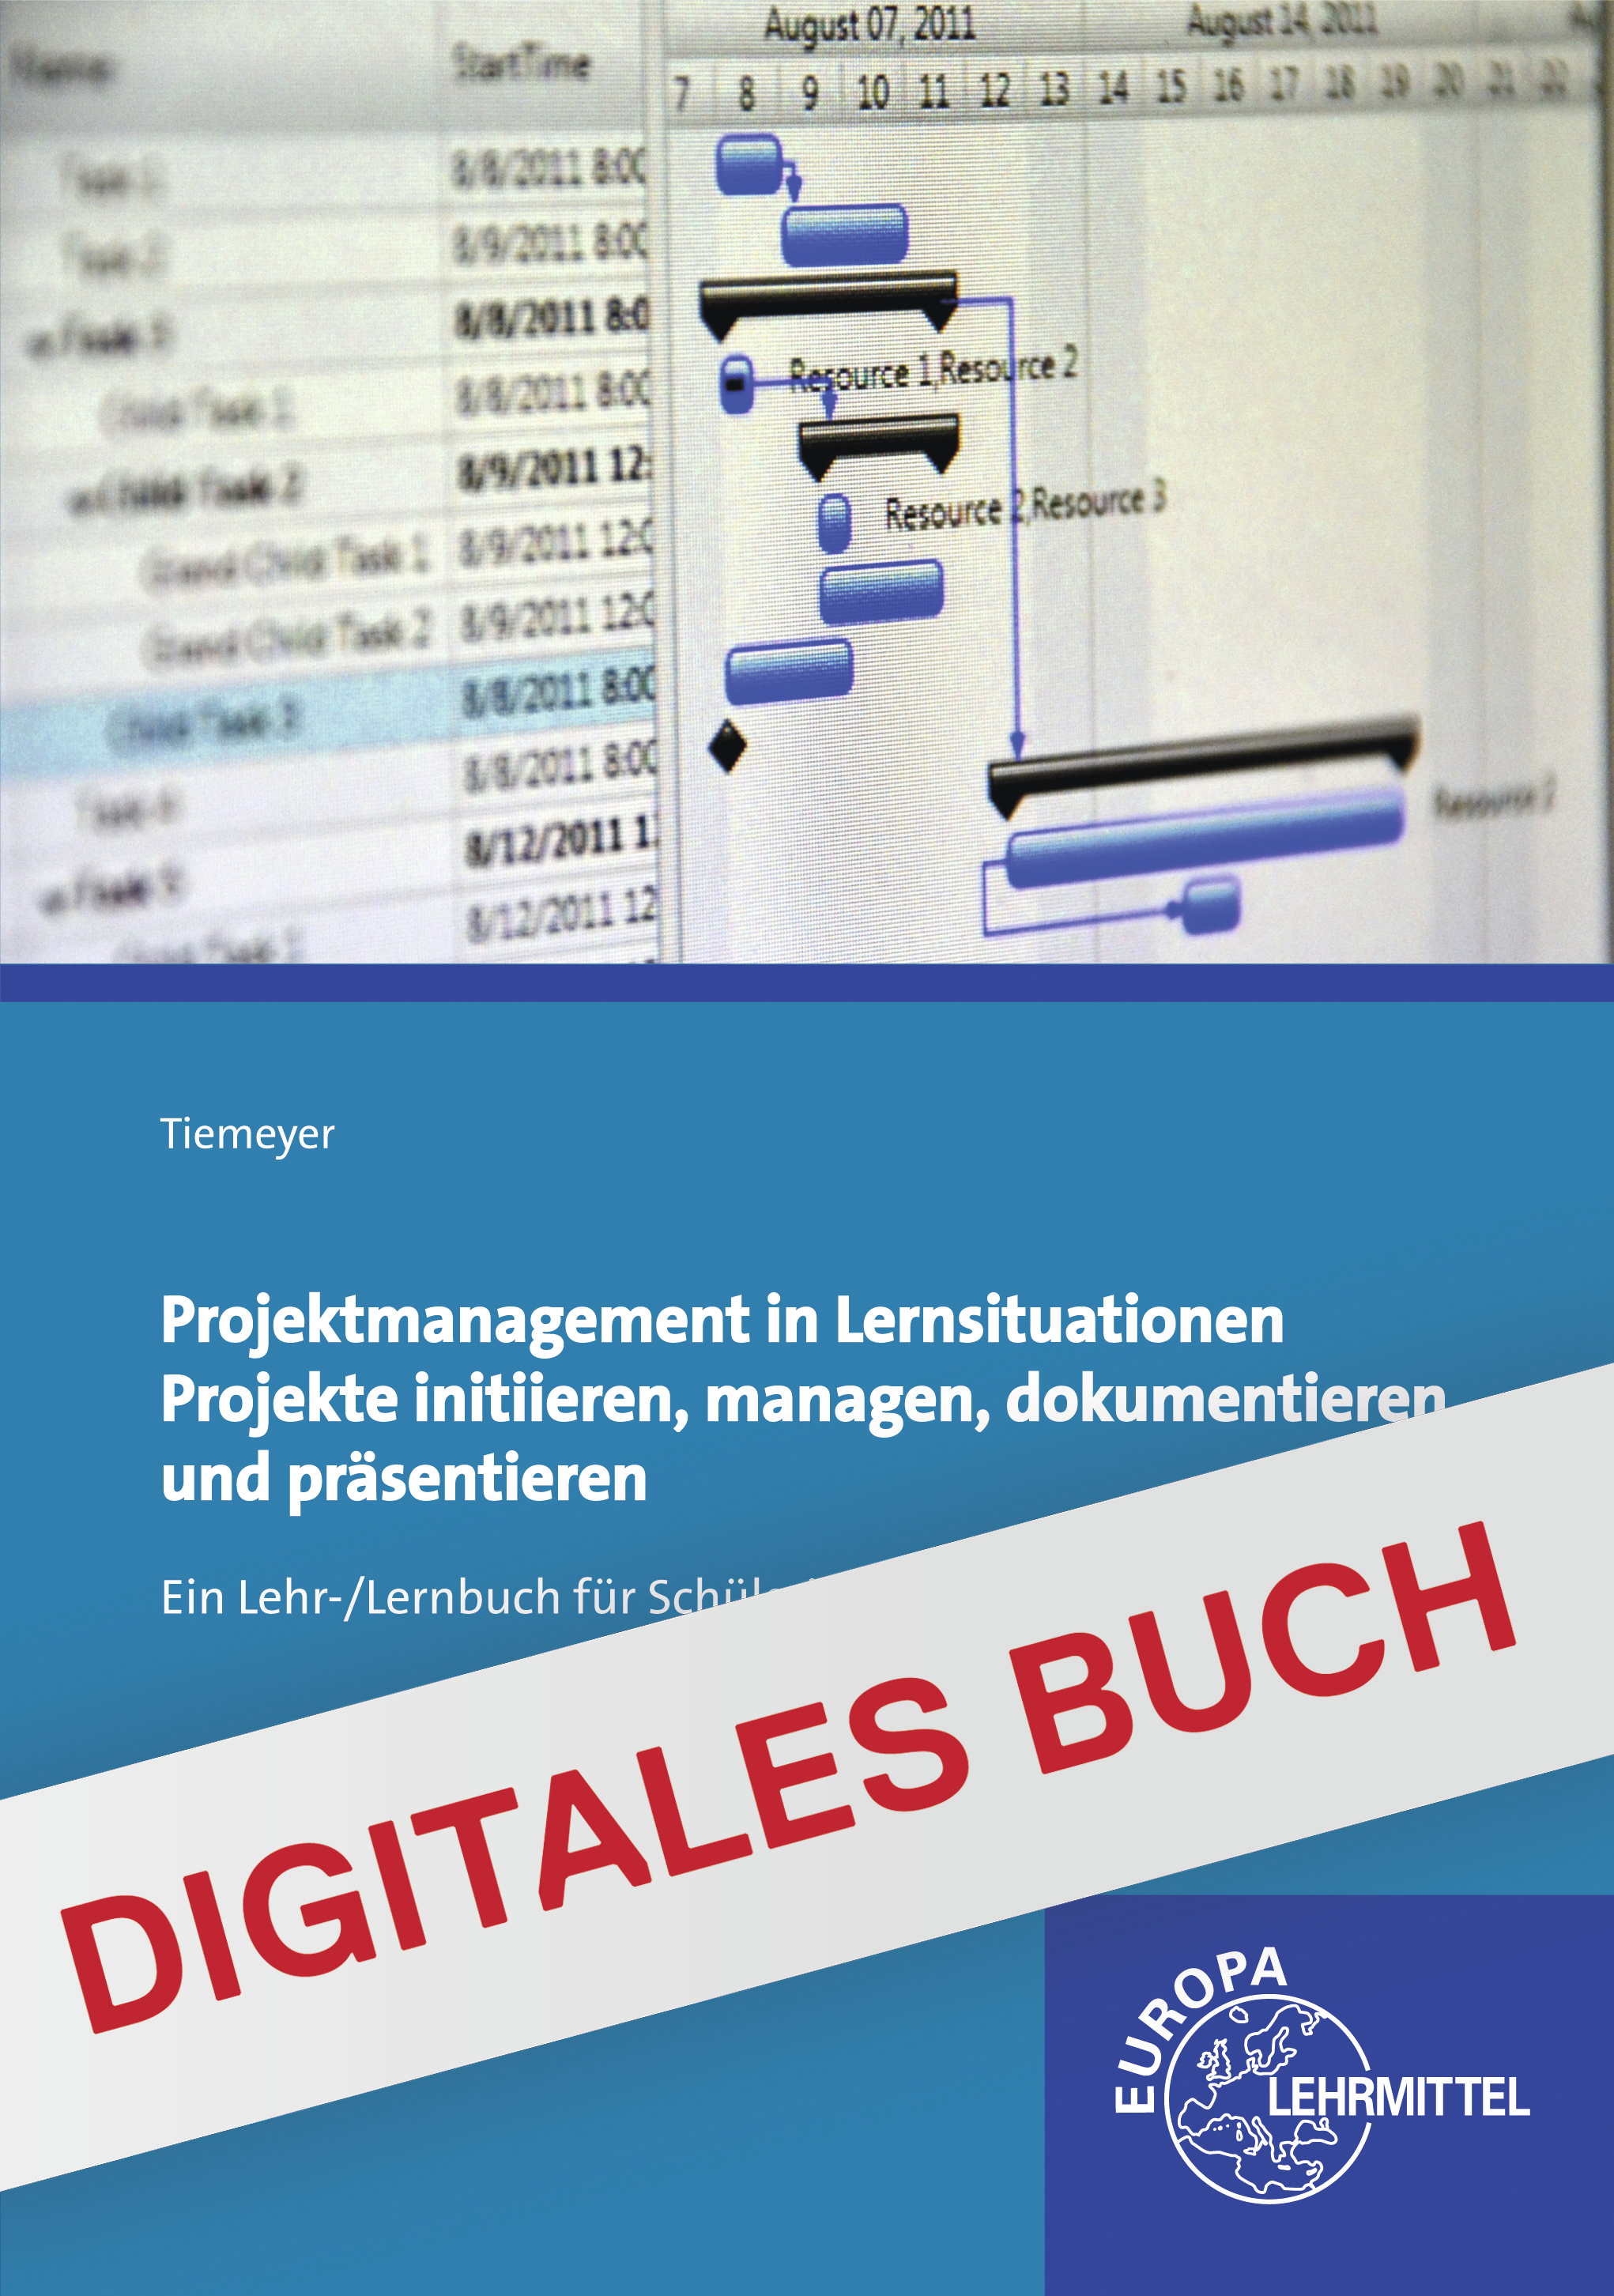 Projektmanagement in Lernsituationen - Digitales Buch